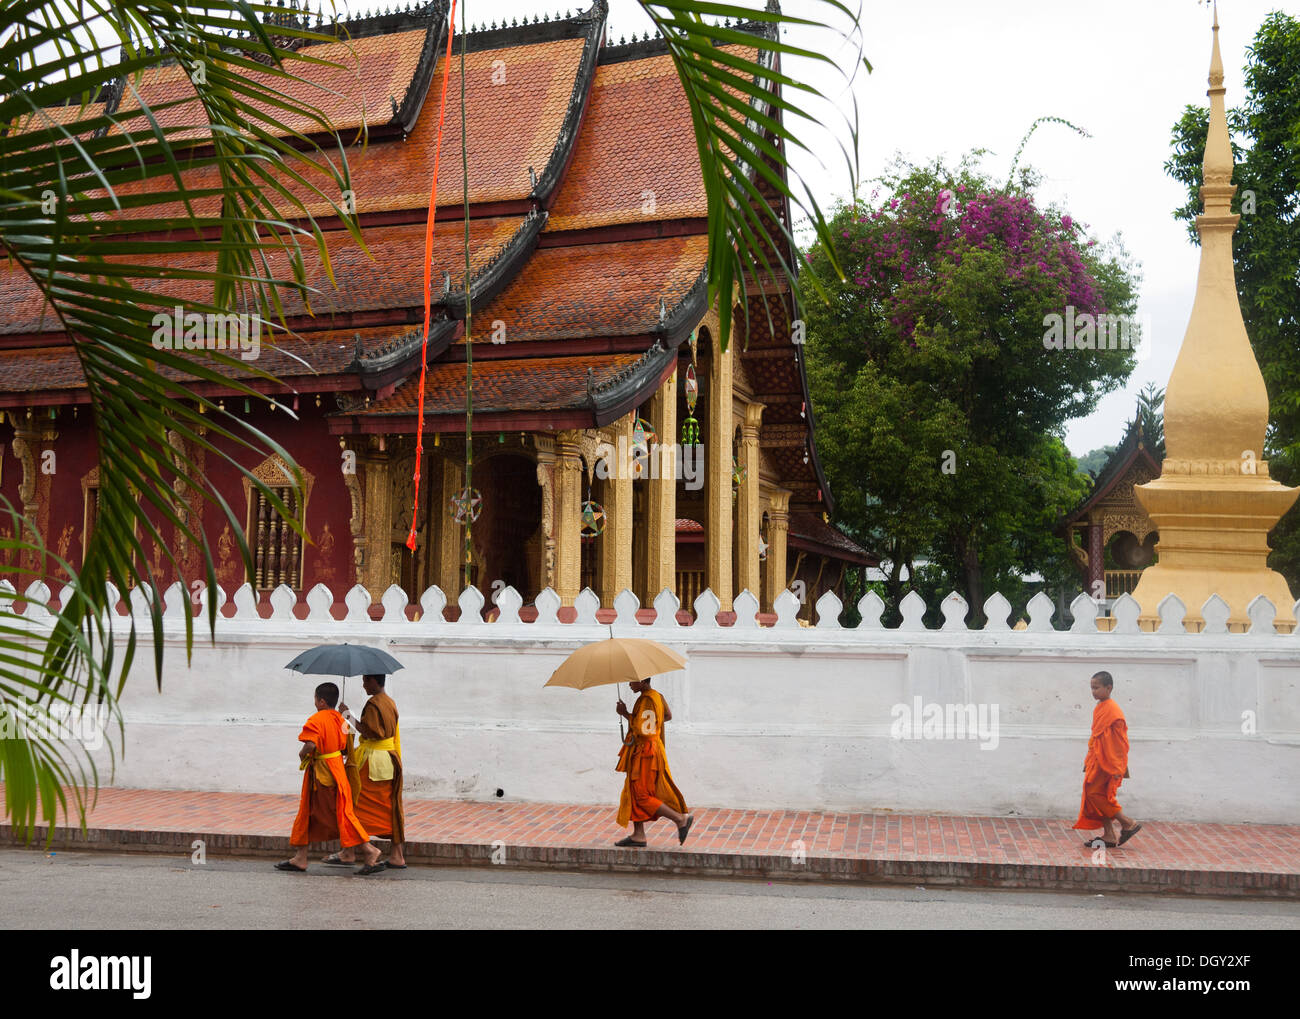 Un groupe de quatre (4) moines à pied passé Wat Sen temple bouddhiste à Luang Prabang, Laos. Banque D'Images